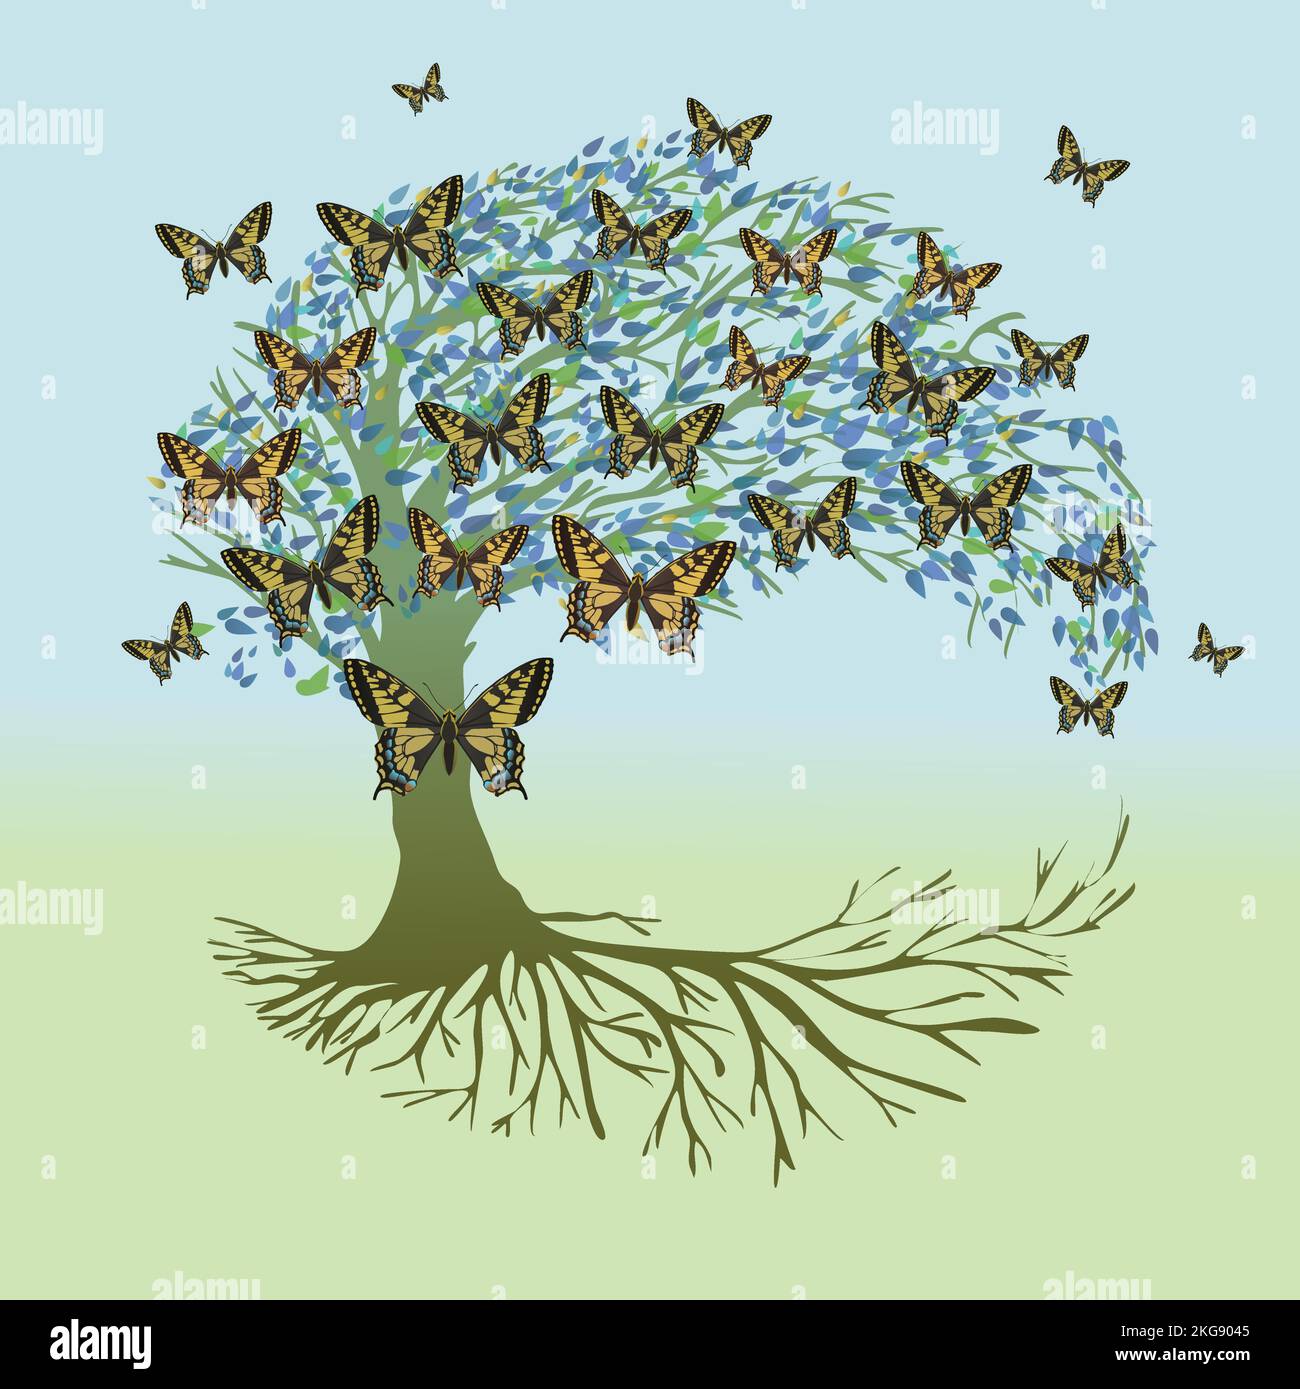 Un albero di vita, chiamato anche yggdrasil, con farfalle a coda di rondine nella corona. L'albero è a forma di luna e aveva anche foglie bluastre. Le radici del Illustrazione Vettoriale